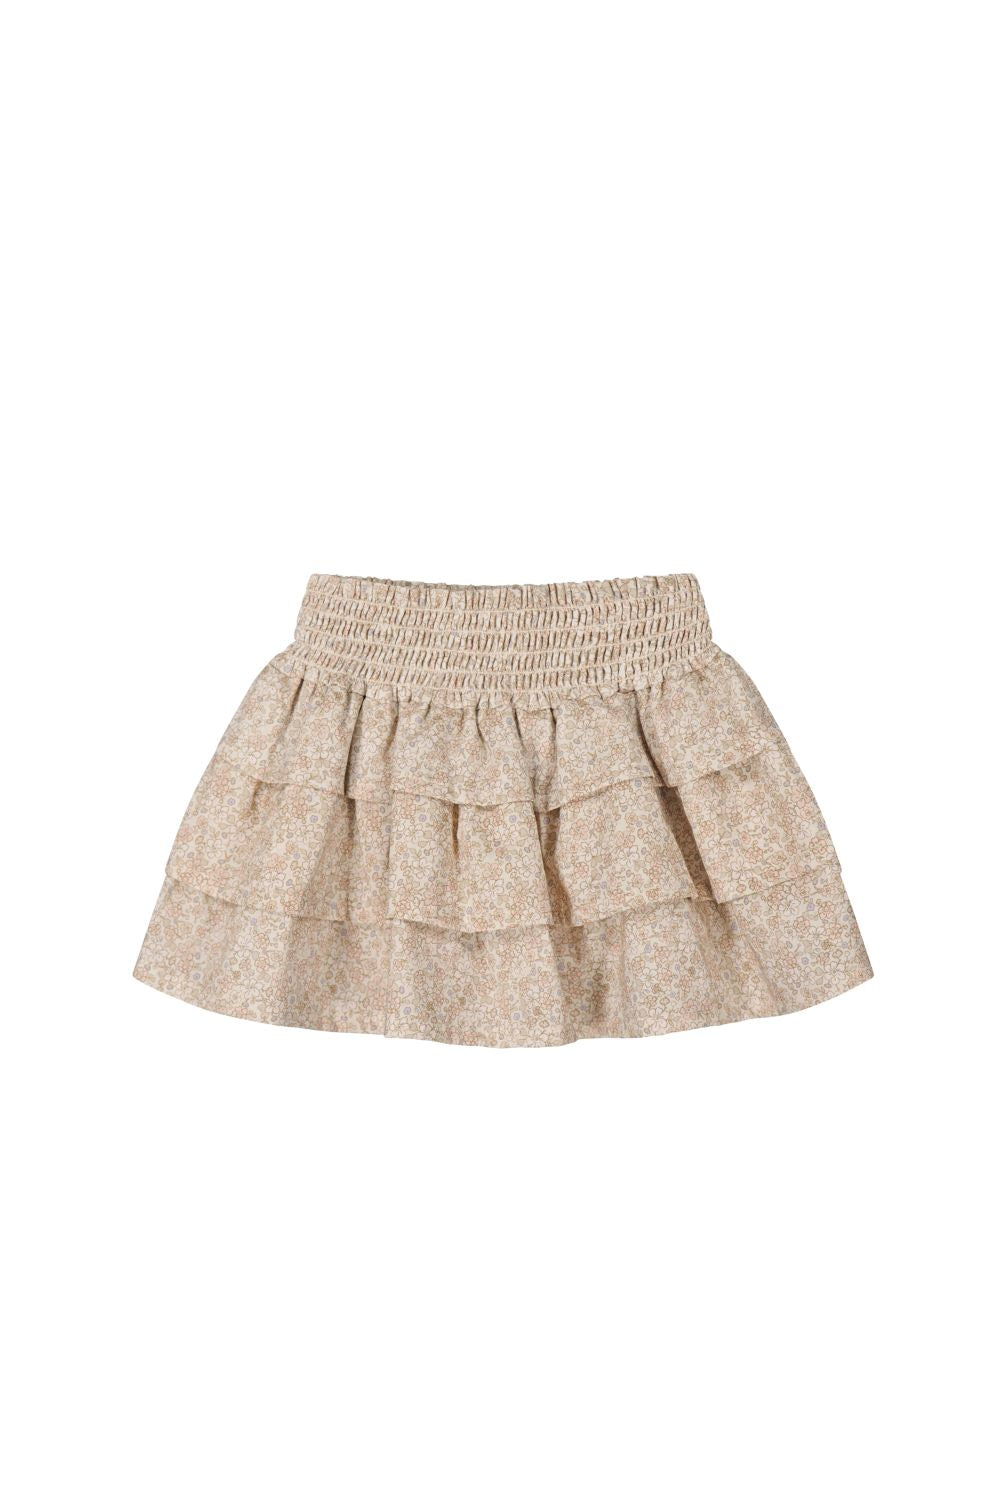 Jamie Kay - Cotton Garden Skirt - Chloe Pink Tint